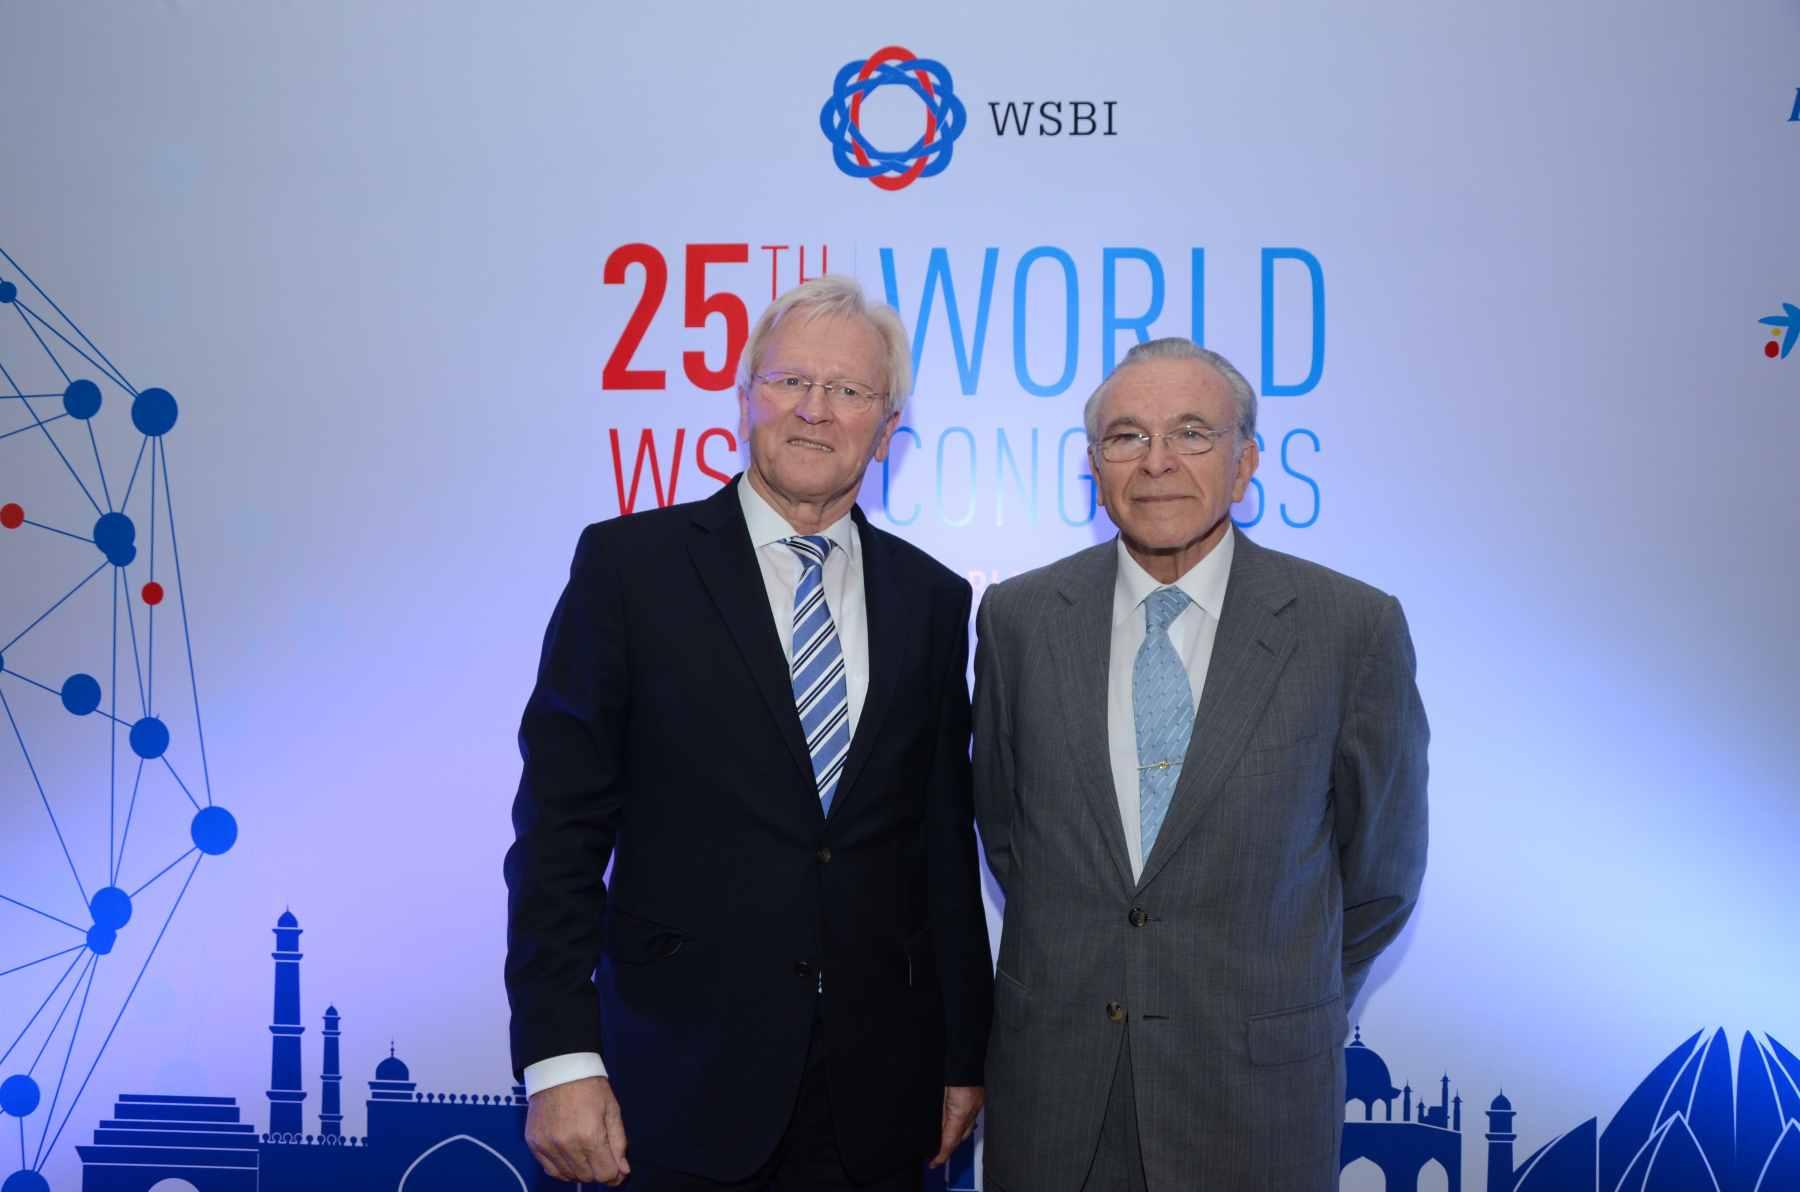 Isidro Fainé, presidente del WSBI, de la CECA y de la Fundación Bancaria la Caixa, con Heinrich Haasis, presidente de honor del WSBI, en Nueva Delhi